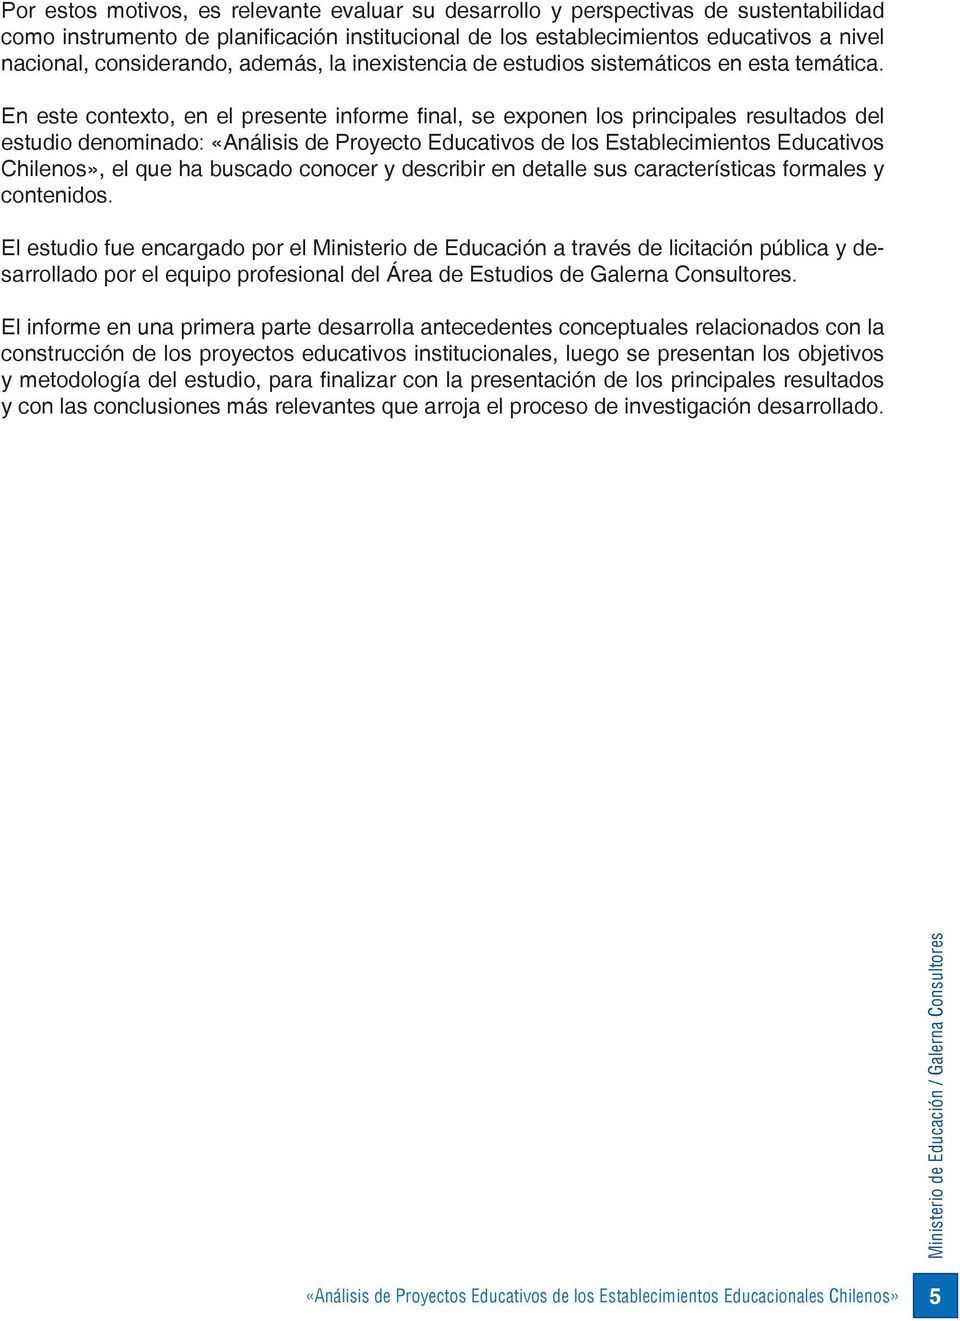 En este contexto, en el presente informe final, se exponen los principales resultados del estudio denominado: «Análisis de Proyecto Educativos de los Establecimientos Educativos Chilenos», el que ha